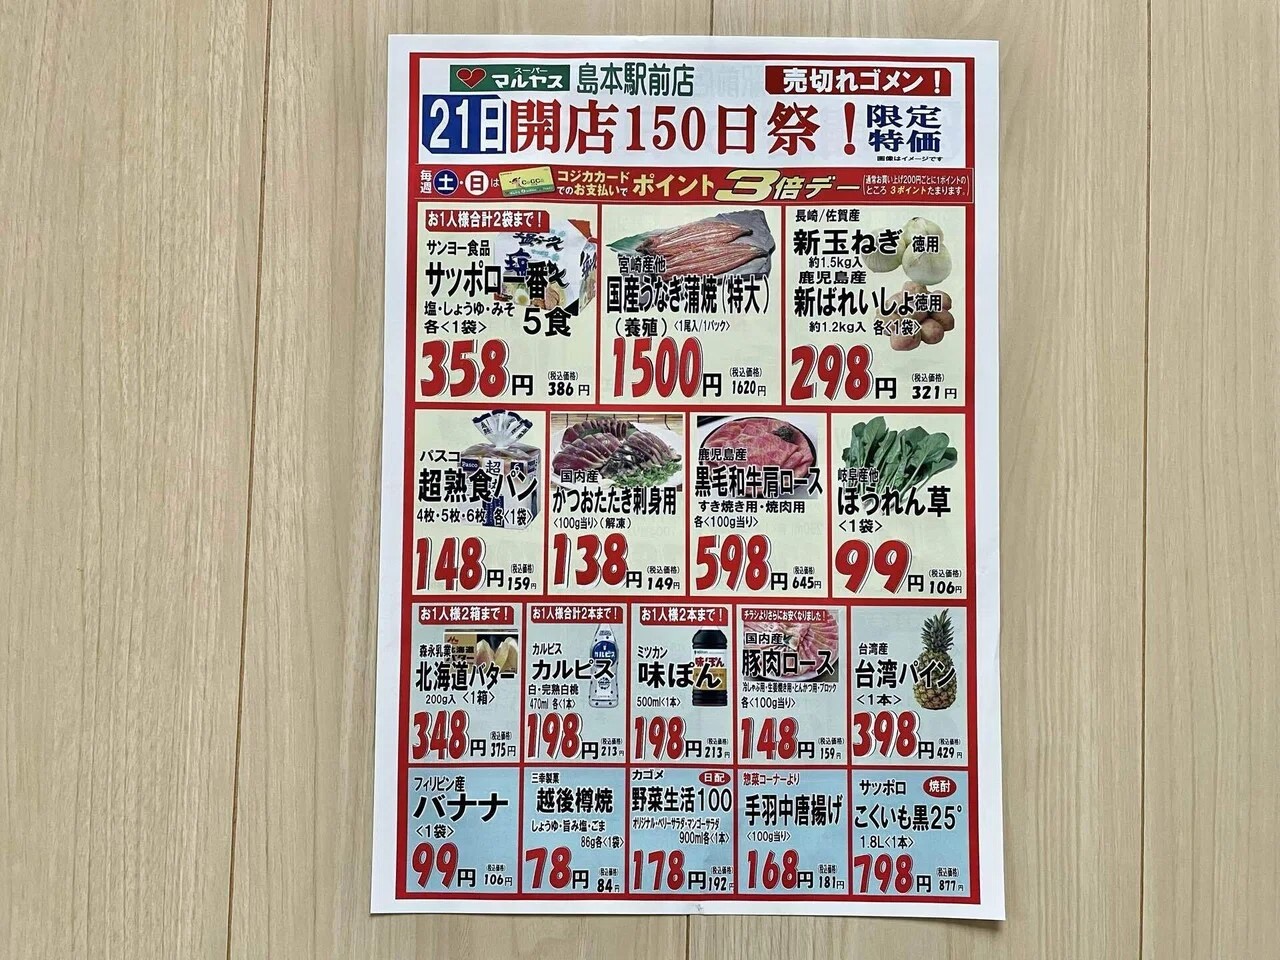 マルヤス島本駅前店オープン150日祭チラシ